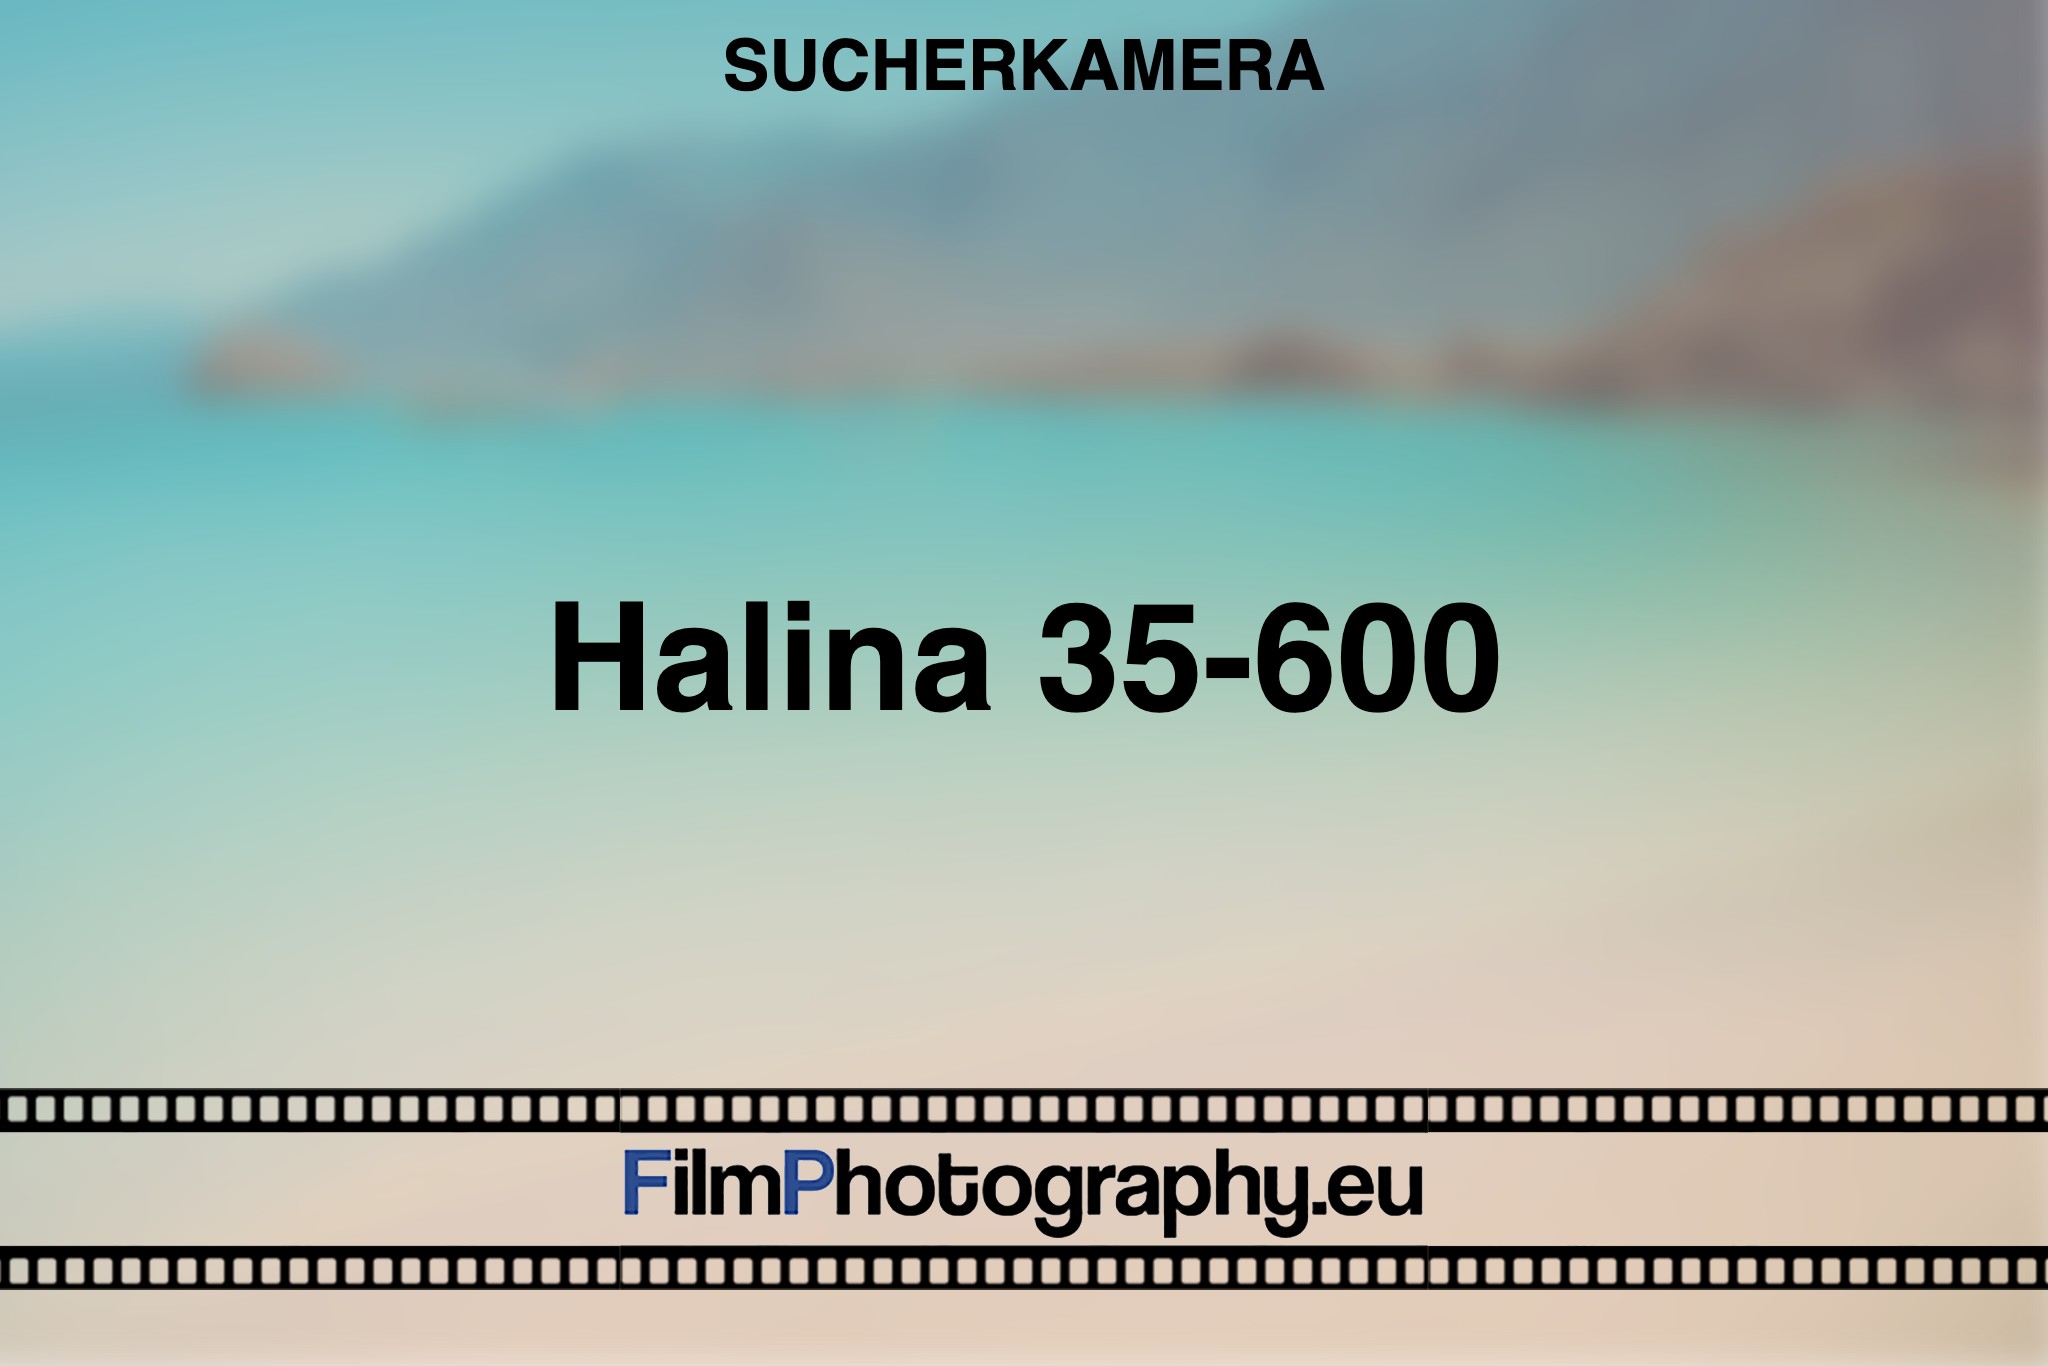 halina-35-600-sucherkamera-bnv